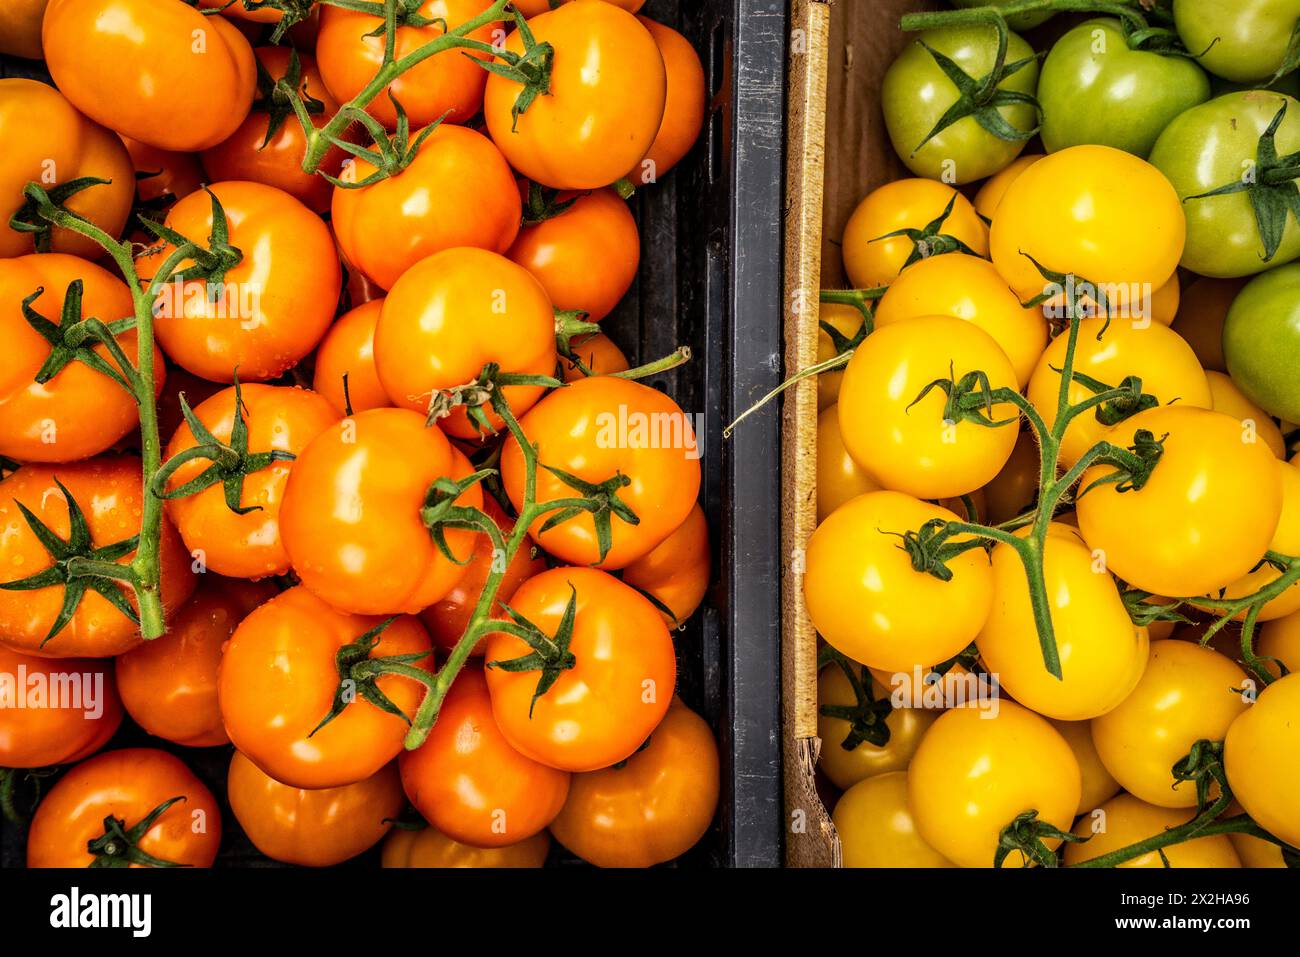 Tomates rouges et jaunes, magasin de légumes, marché urbain, quartier de Pijp, Amsterdam, pays-Bas Banque D'Images